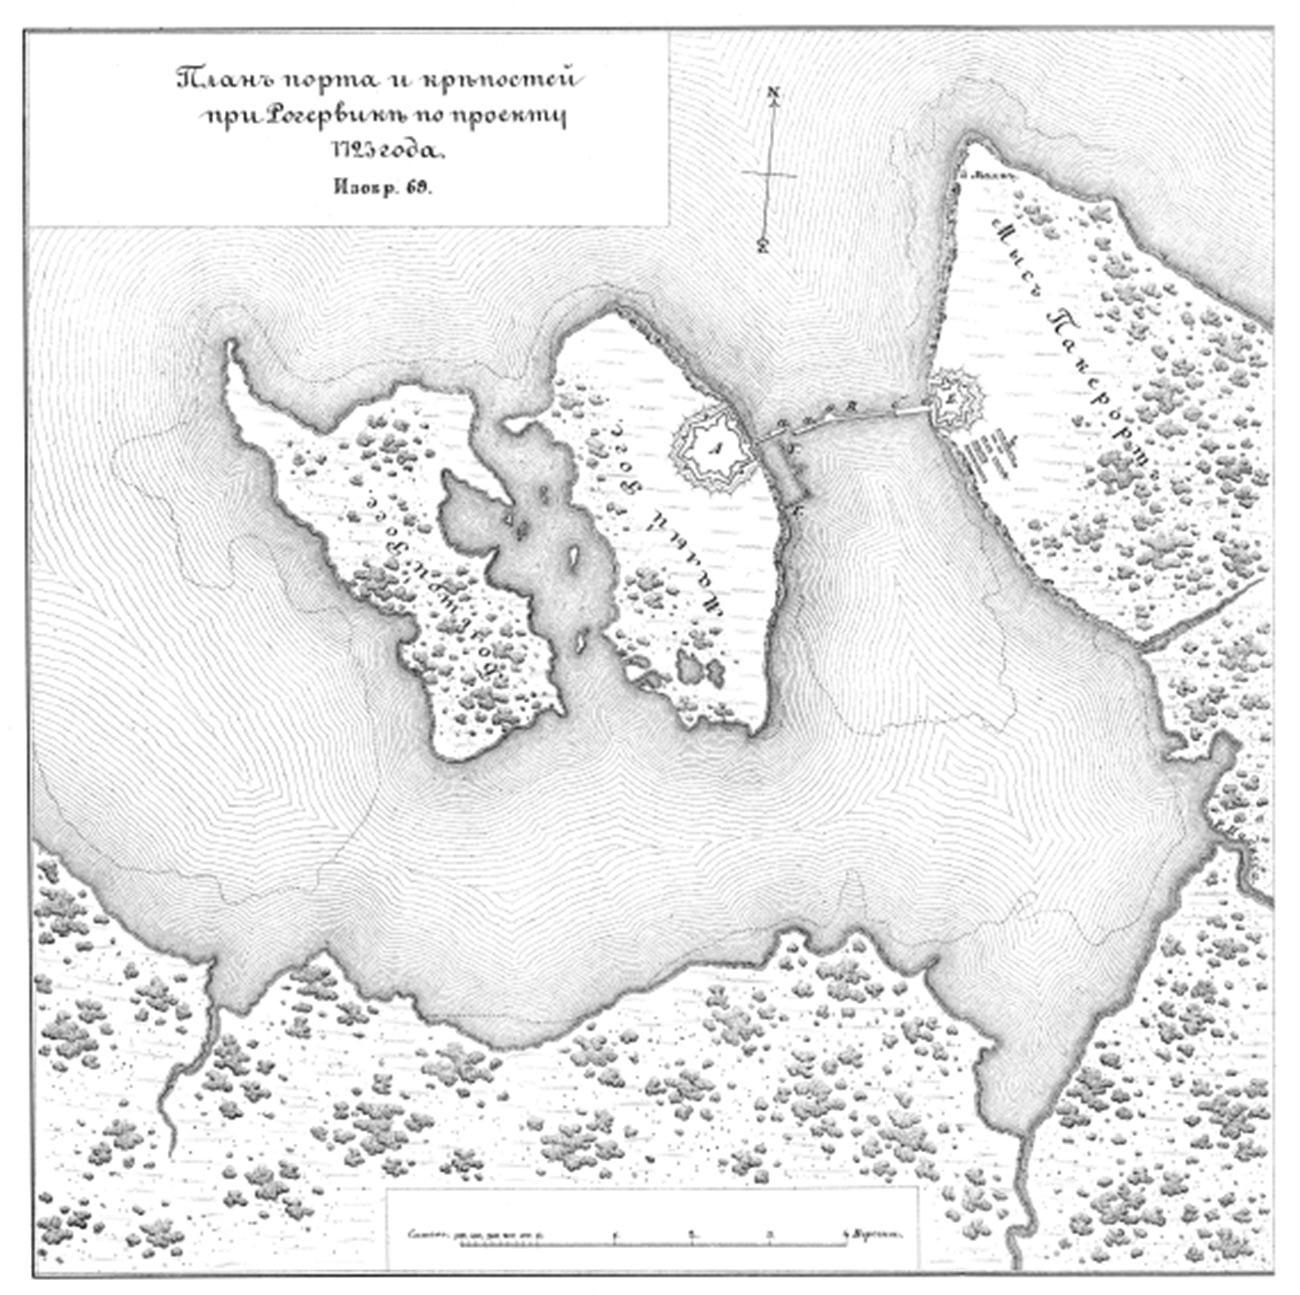 Bahía de Rogervik, 1723.
